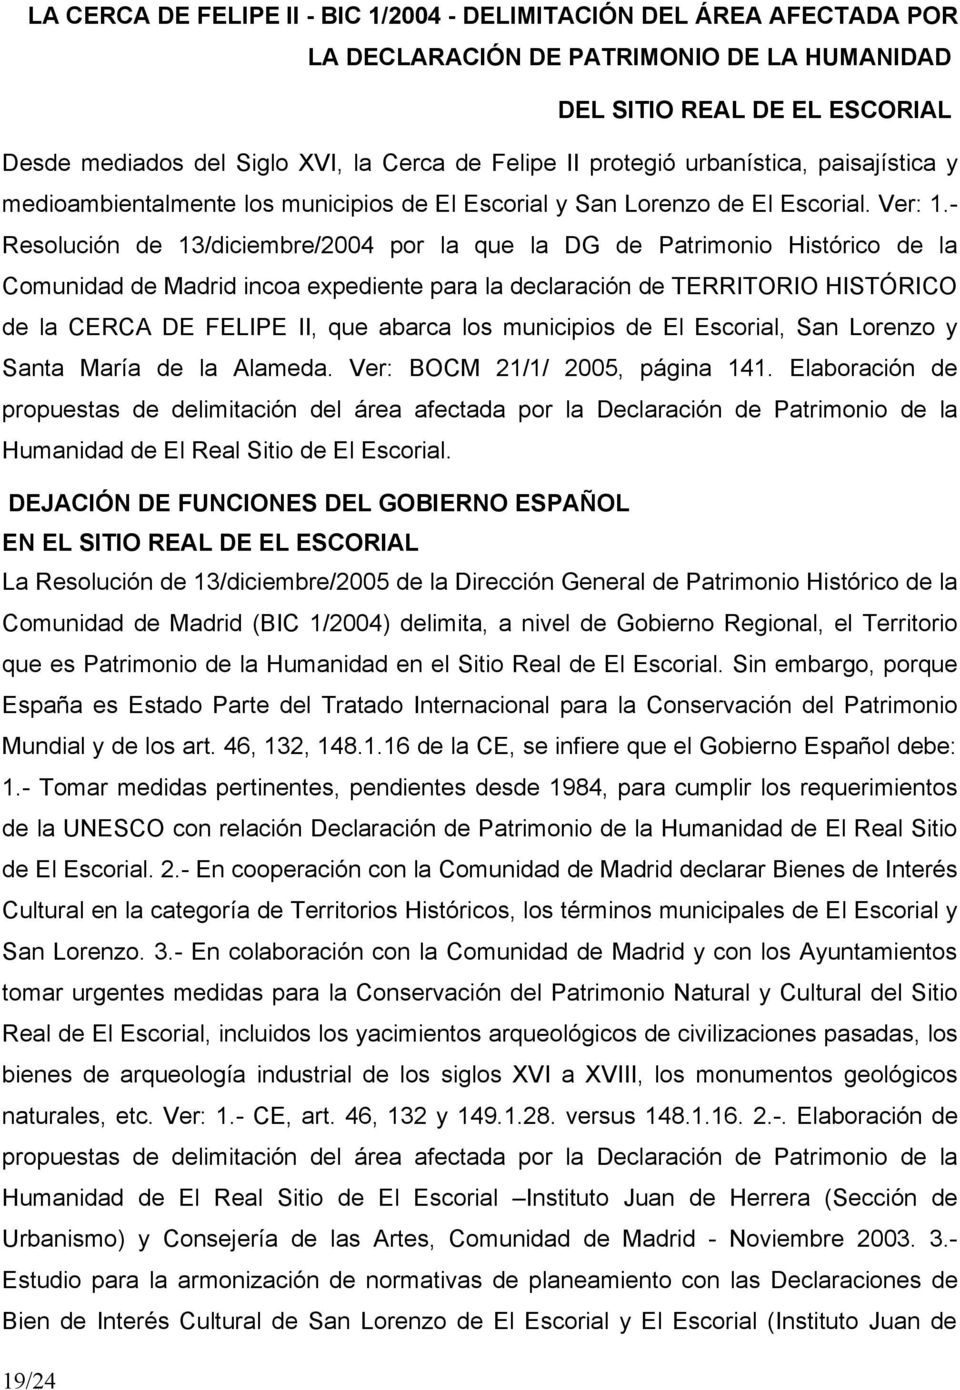 Resolución de 13/diciembre/2004 por la que la DG de Patrimonio Histórico de la Comunidad de Madrid incoa expediente para la declaración de TERRITORIO HISTÓRICO de la CERCA DE FELIPE II, que abarca